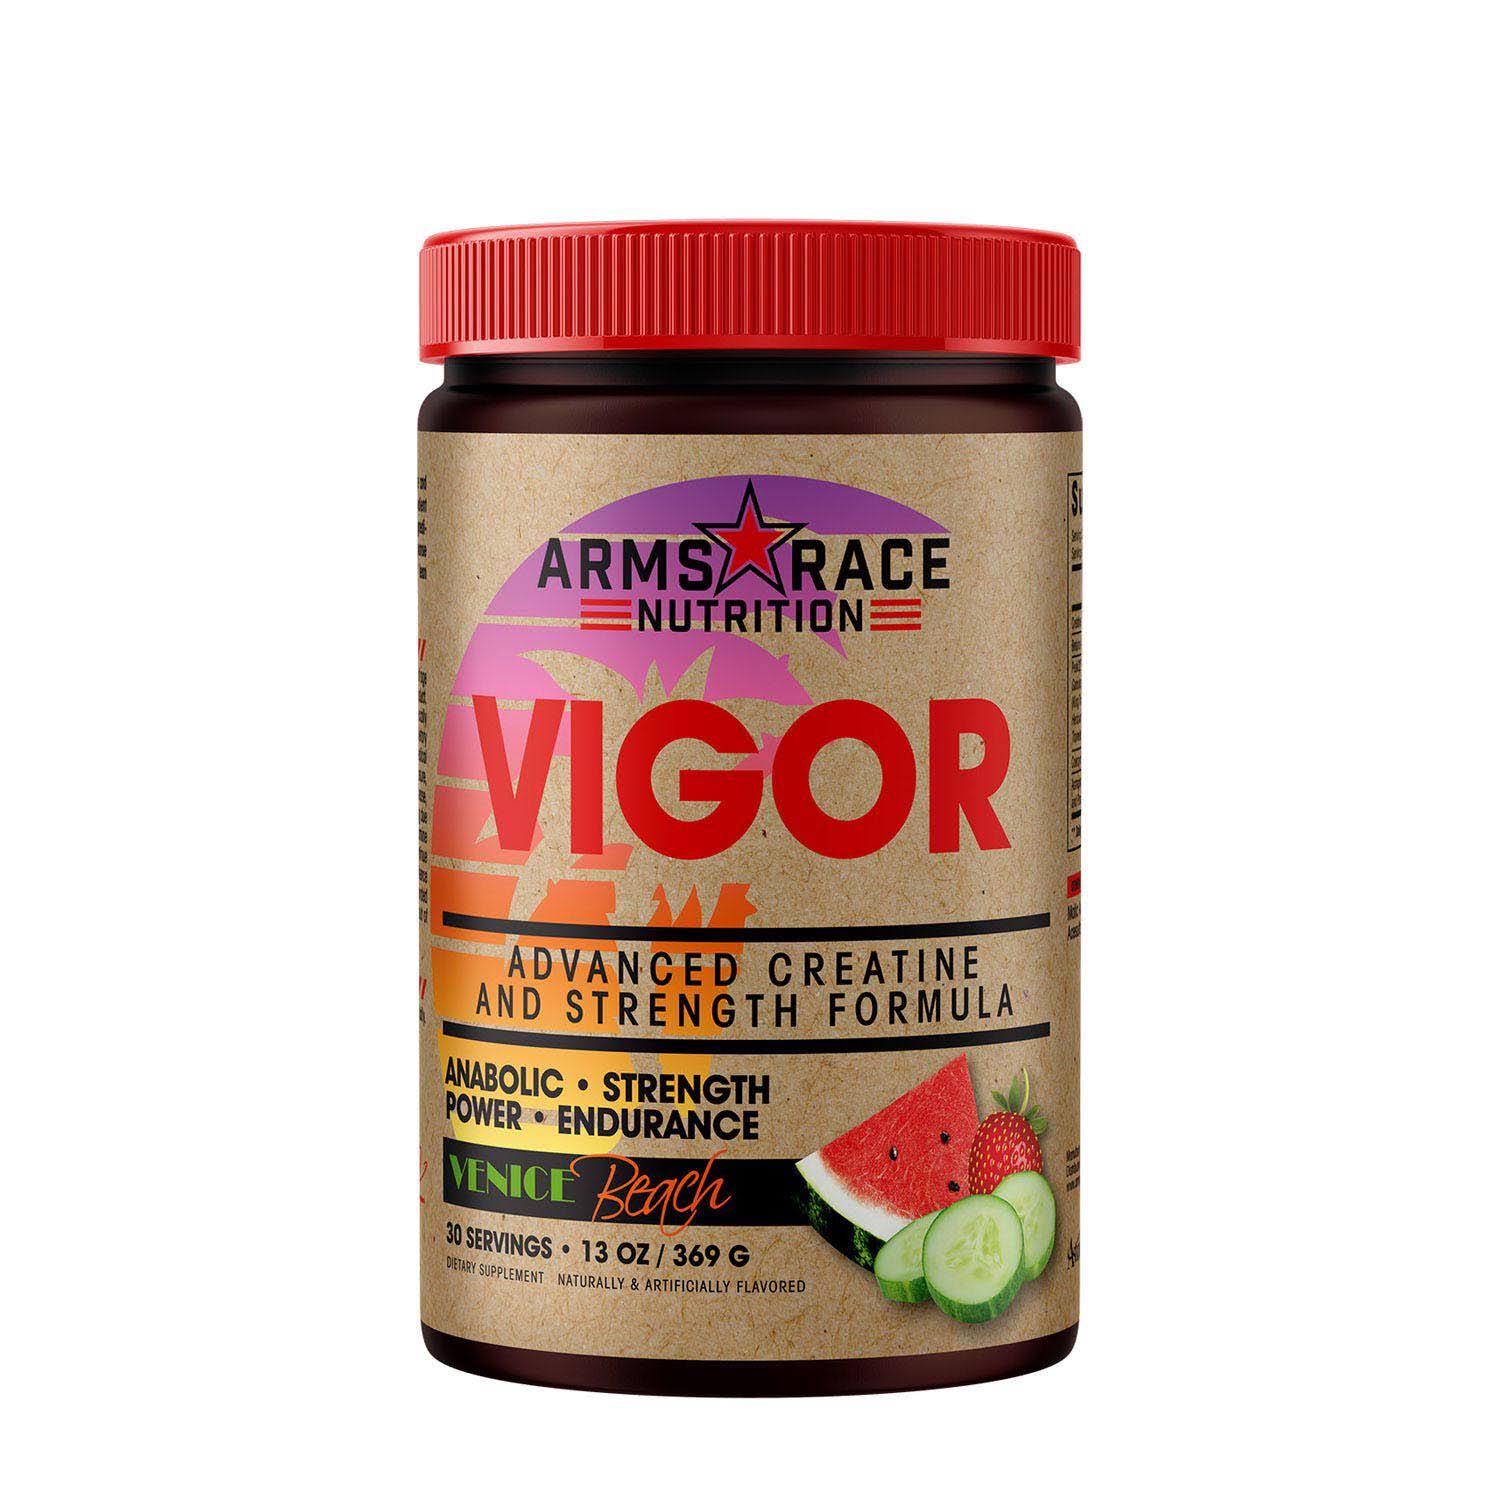 Arms Race Nutrition Vigor - Venice Beach - Creatine - 30 Servings